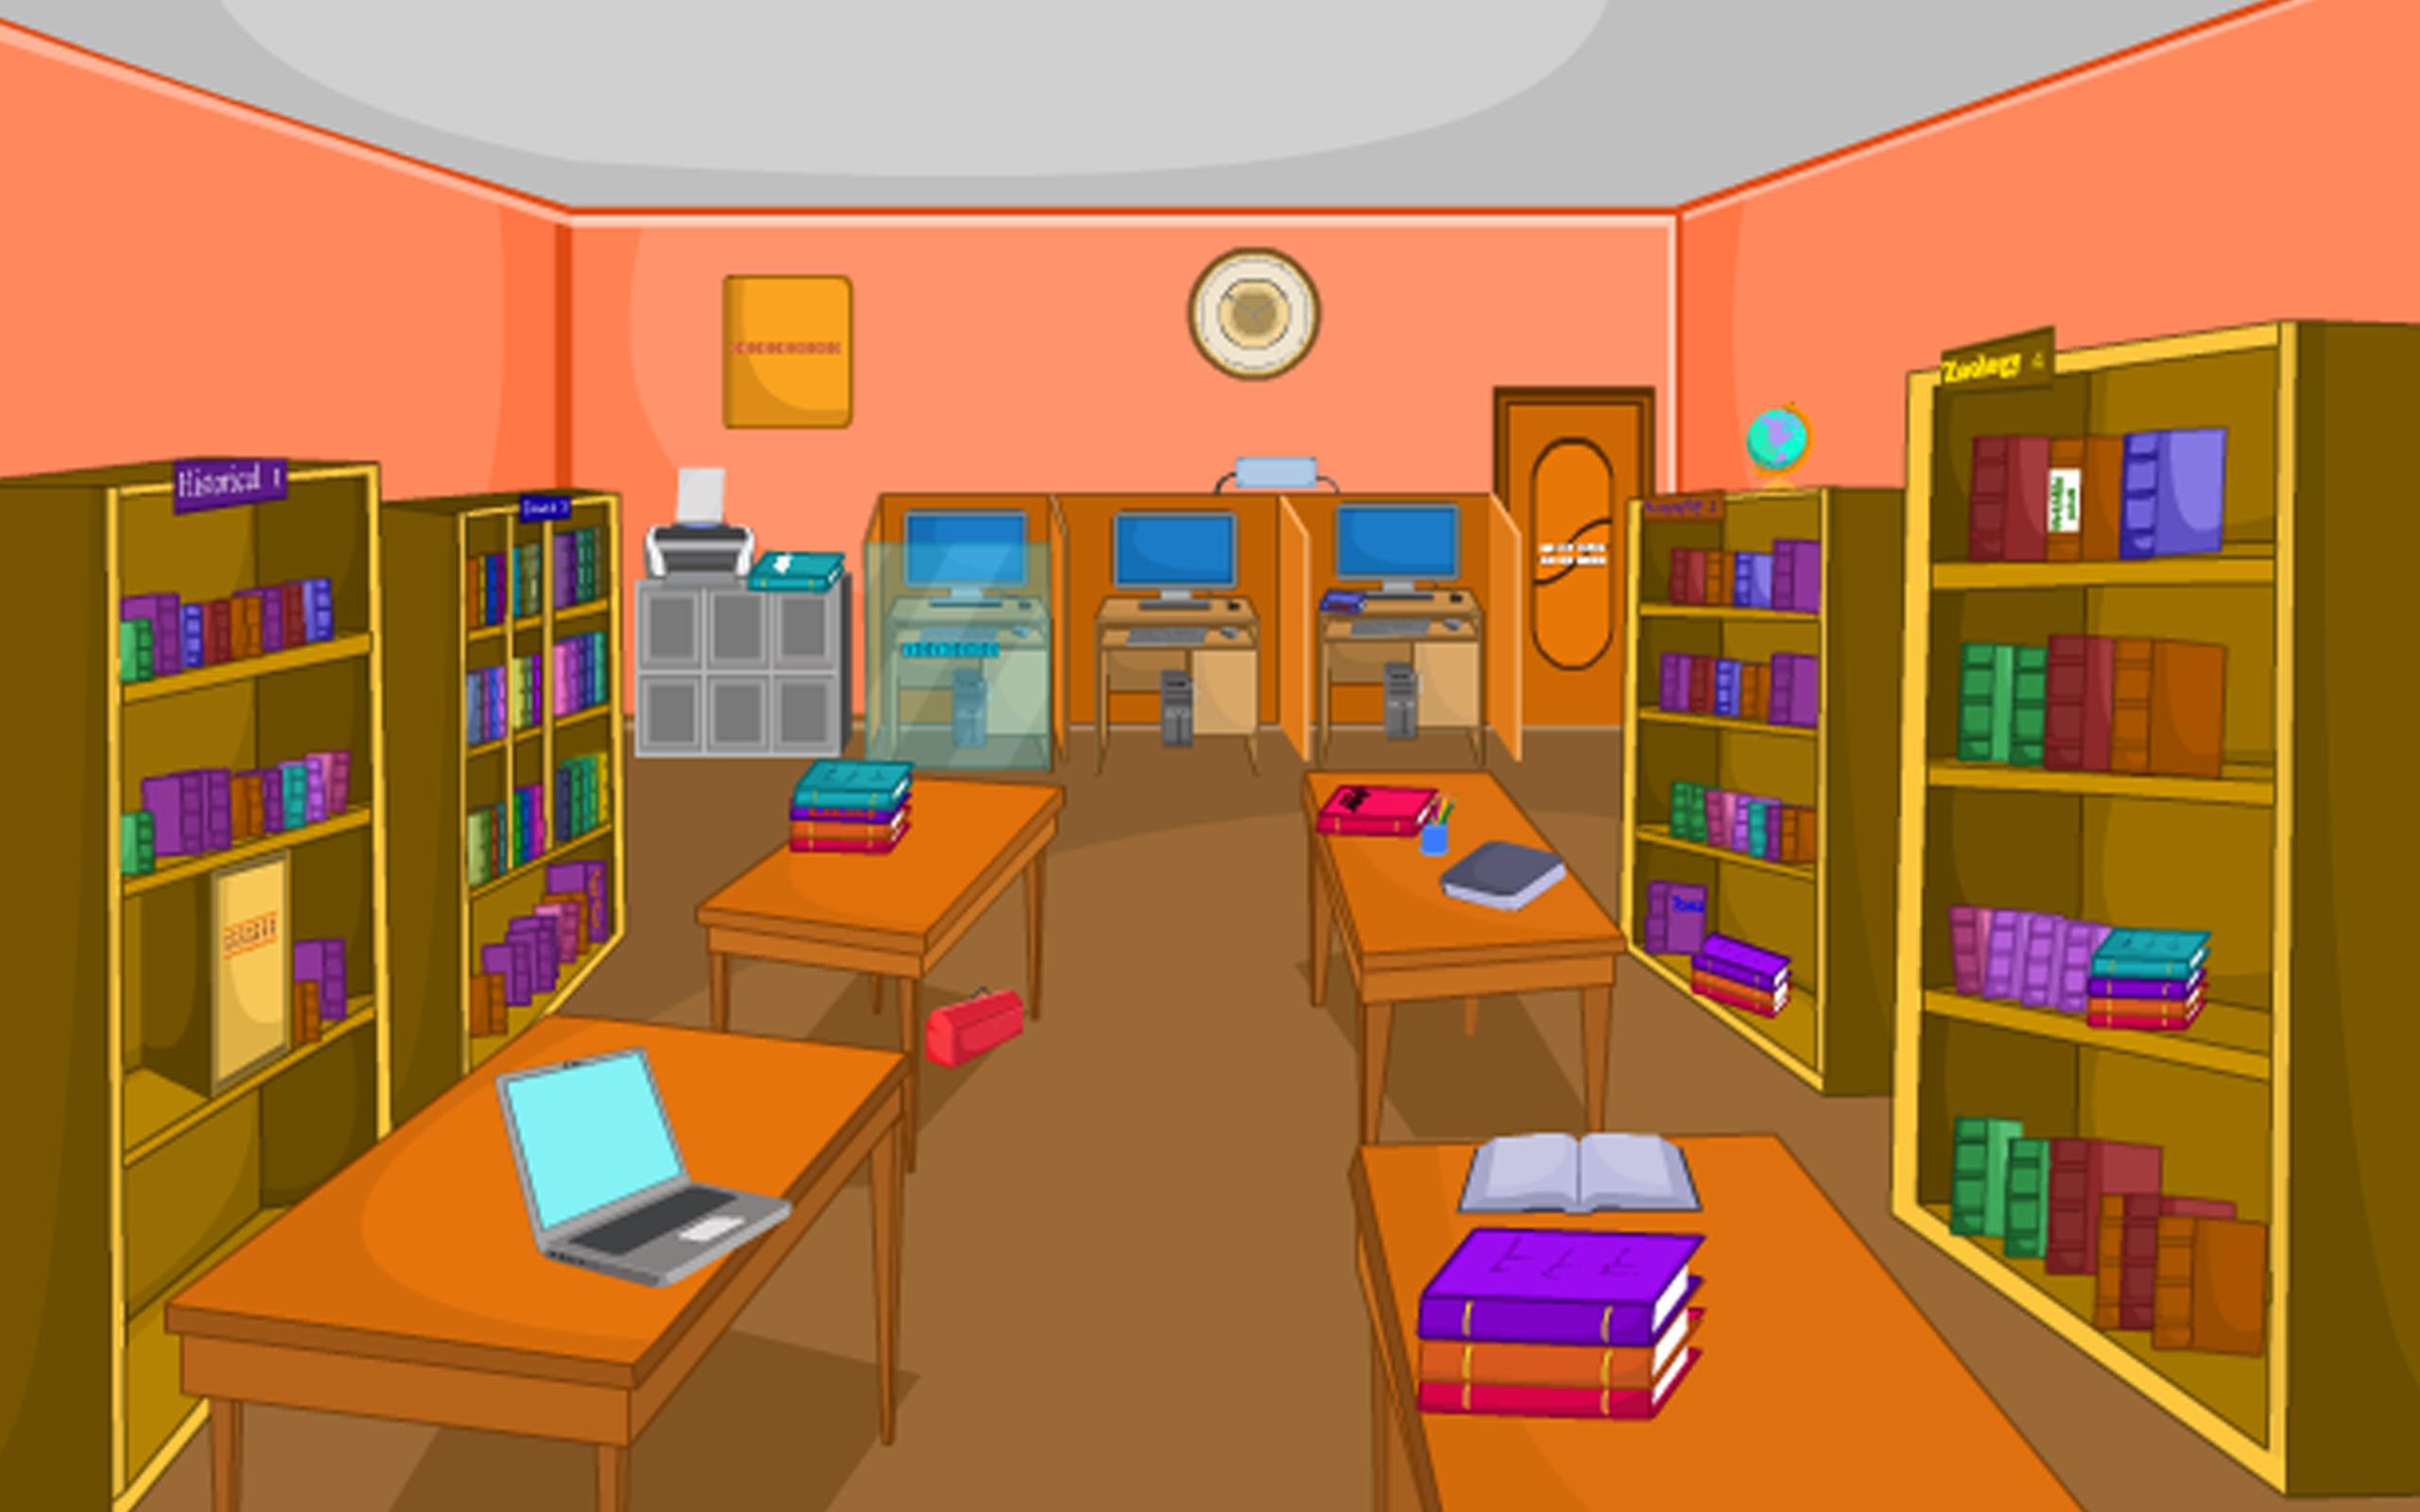 Library игра. Игры в библиотеке. Библиотечная игра для малышей. Си библиотека для игр. Картинки комнаты библиотеки для игры.